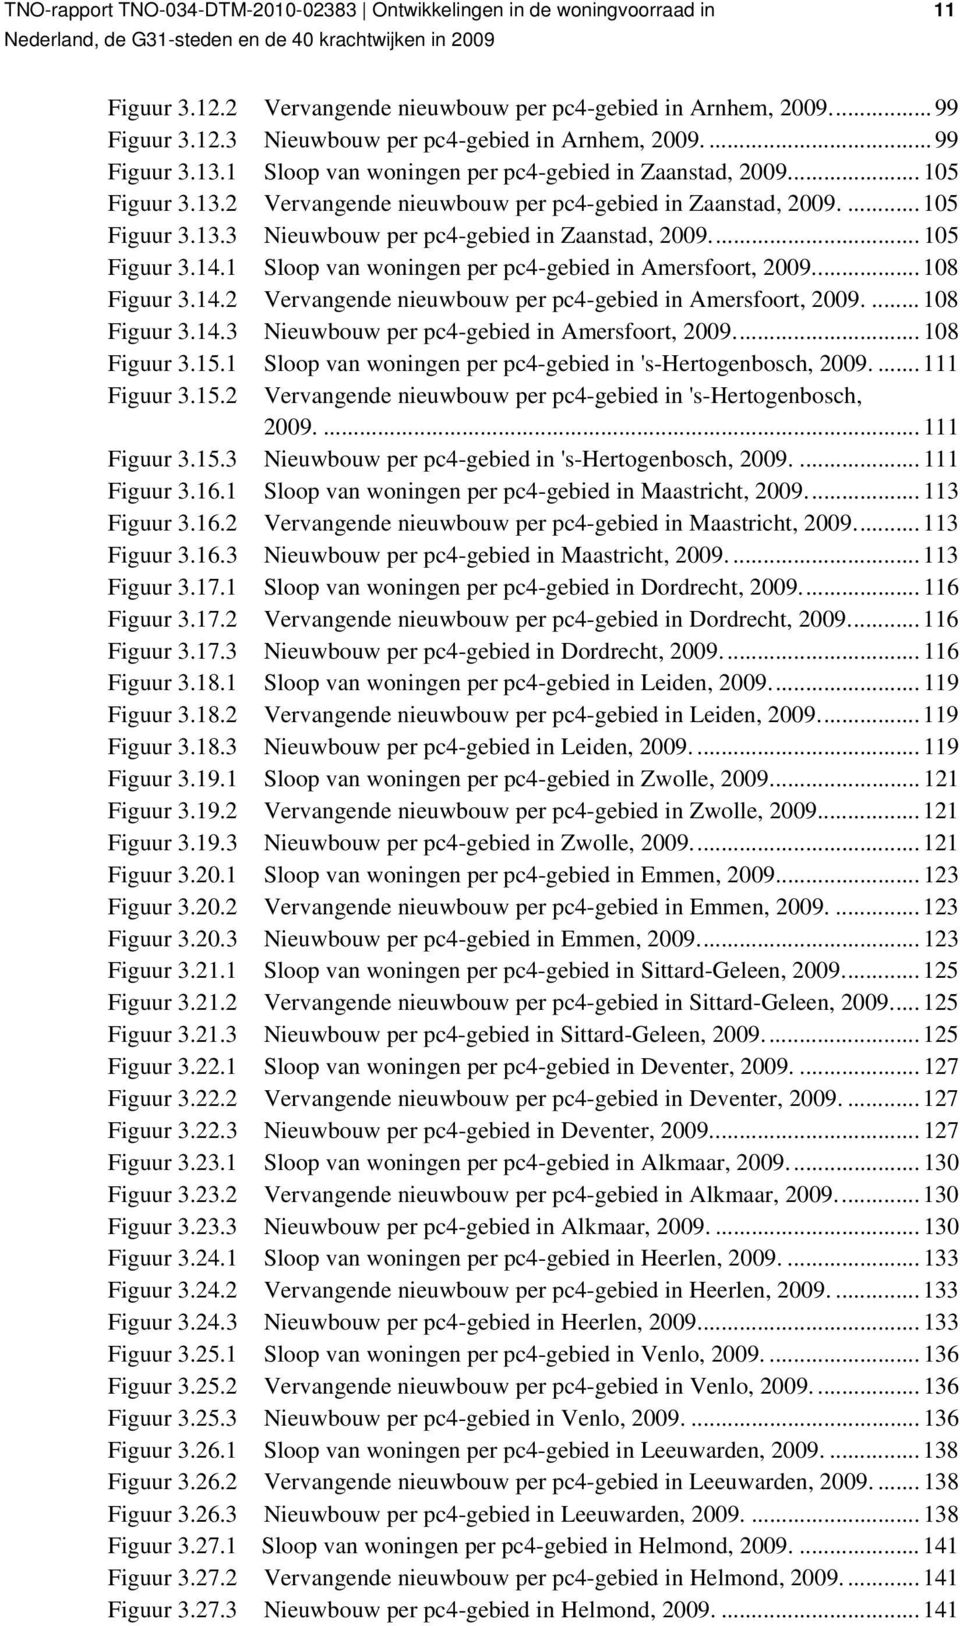 ... 108 Figuur 3.14.3 Nieuwbouw per pc4-gebied in Amersfoort,... 108 Figuur 3.15.1 Sloop van per pc4-gebied in 's-hertogenbosch,.... 111 Figuur 3.15.2 Vervangende nieuwbouw per pc4-gebied in 's-hertogenbosch,.